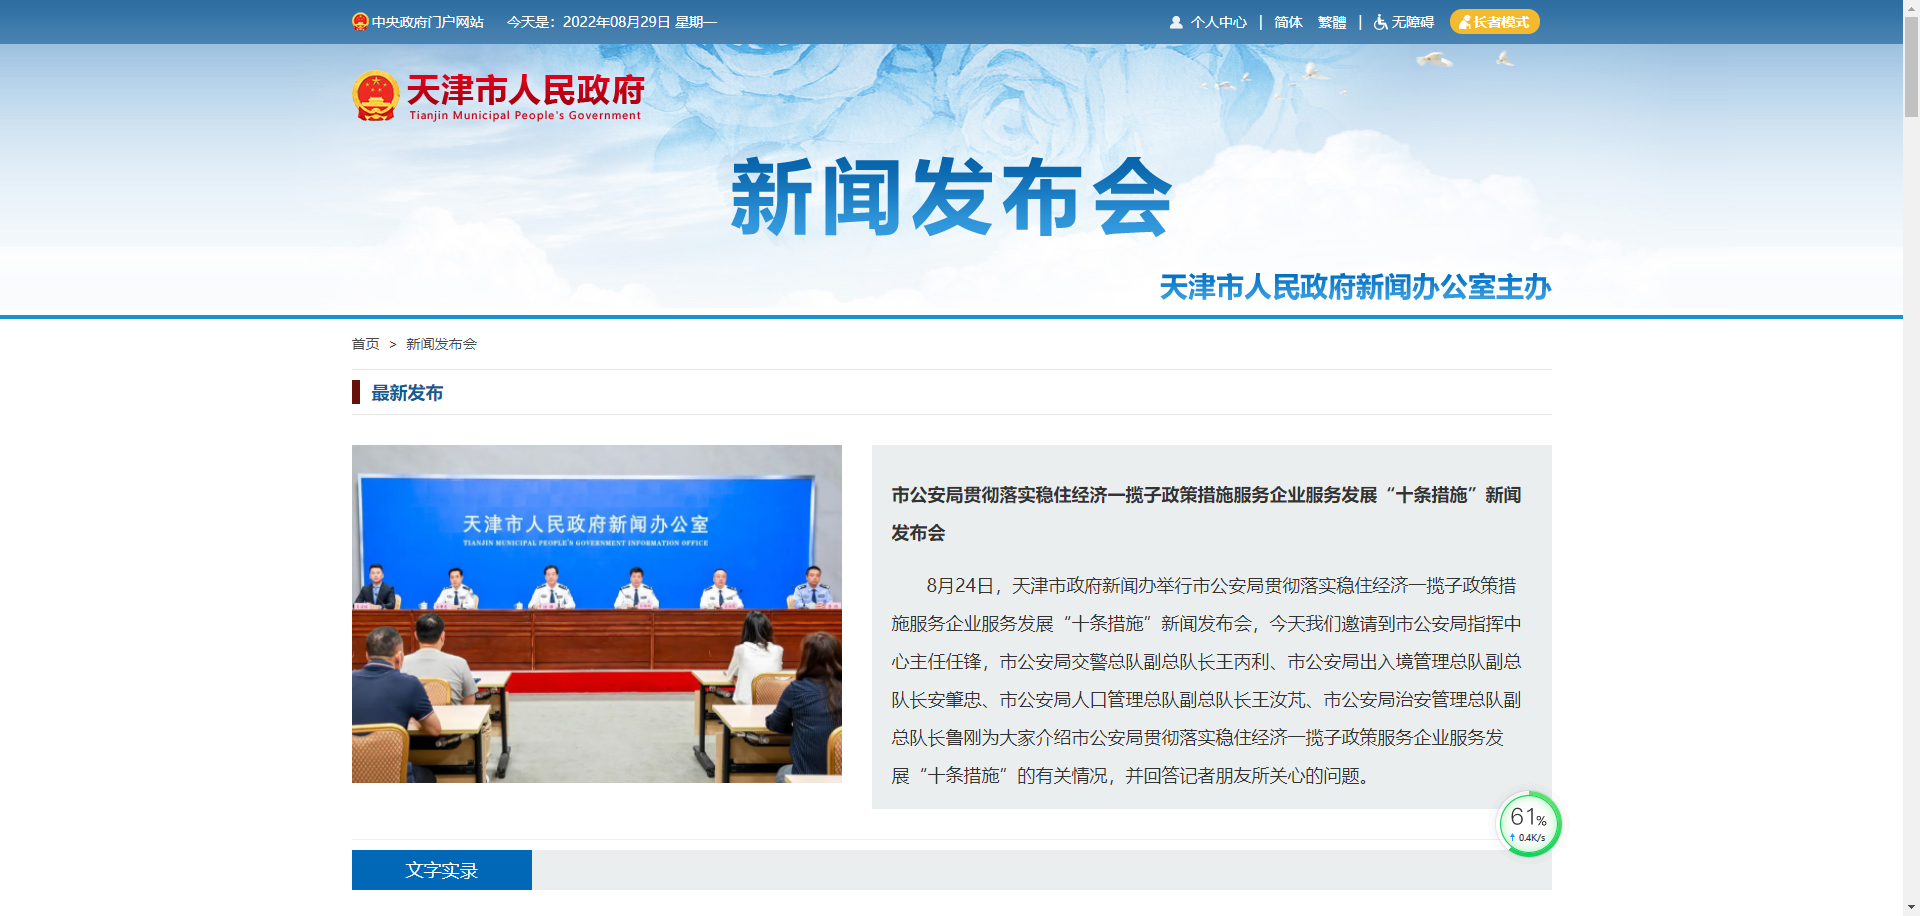 关于天津市发布服务企业服务发展“十条措施”政策优化